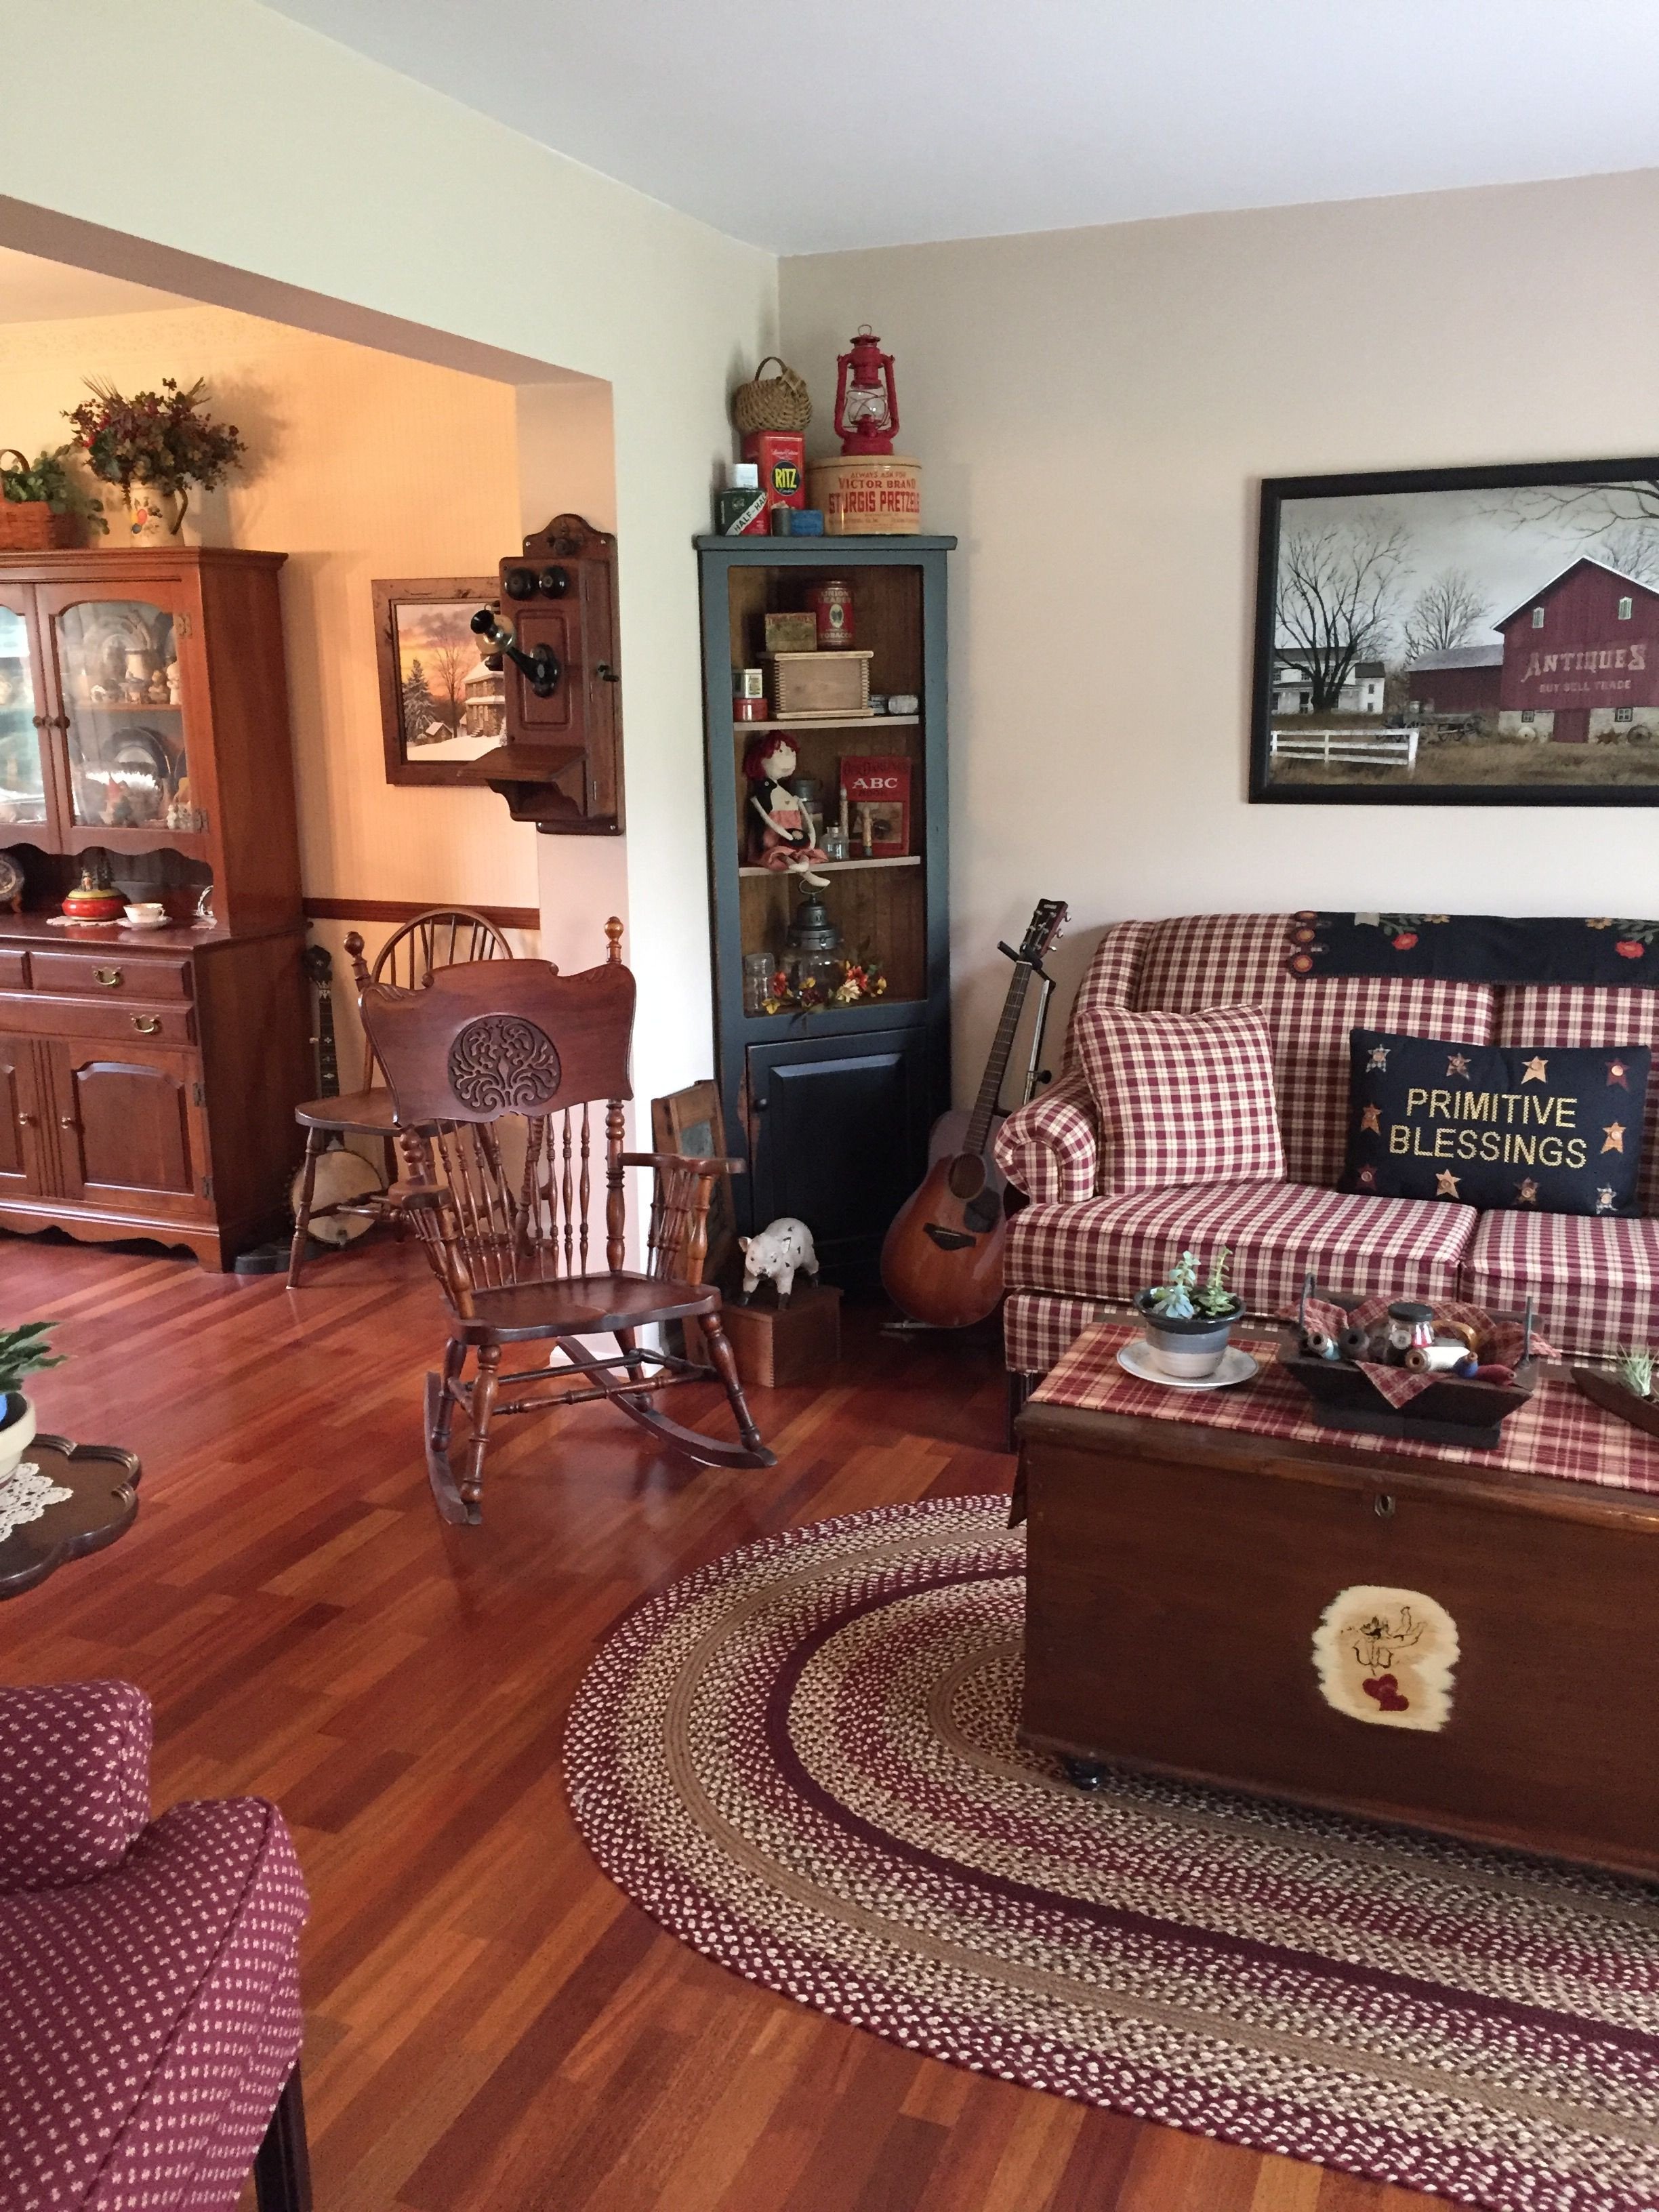 Primitive Small Living Room Ideas Inspirational Primitive Living Room Vintage Home Decor Primitive Decor In 2019